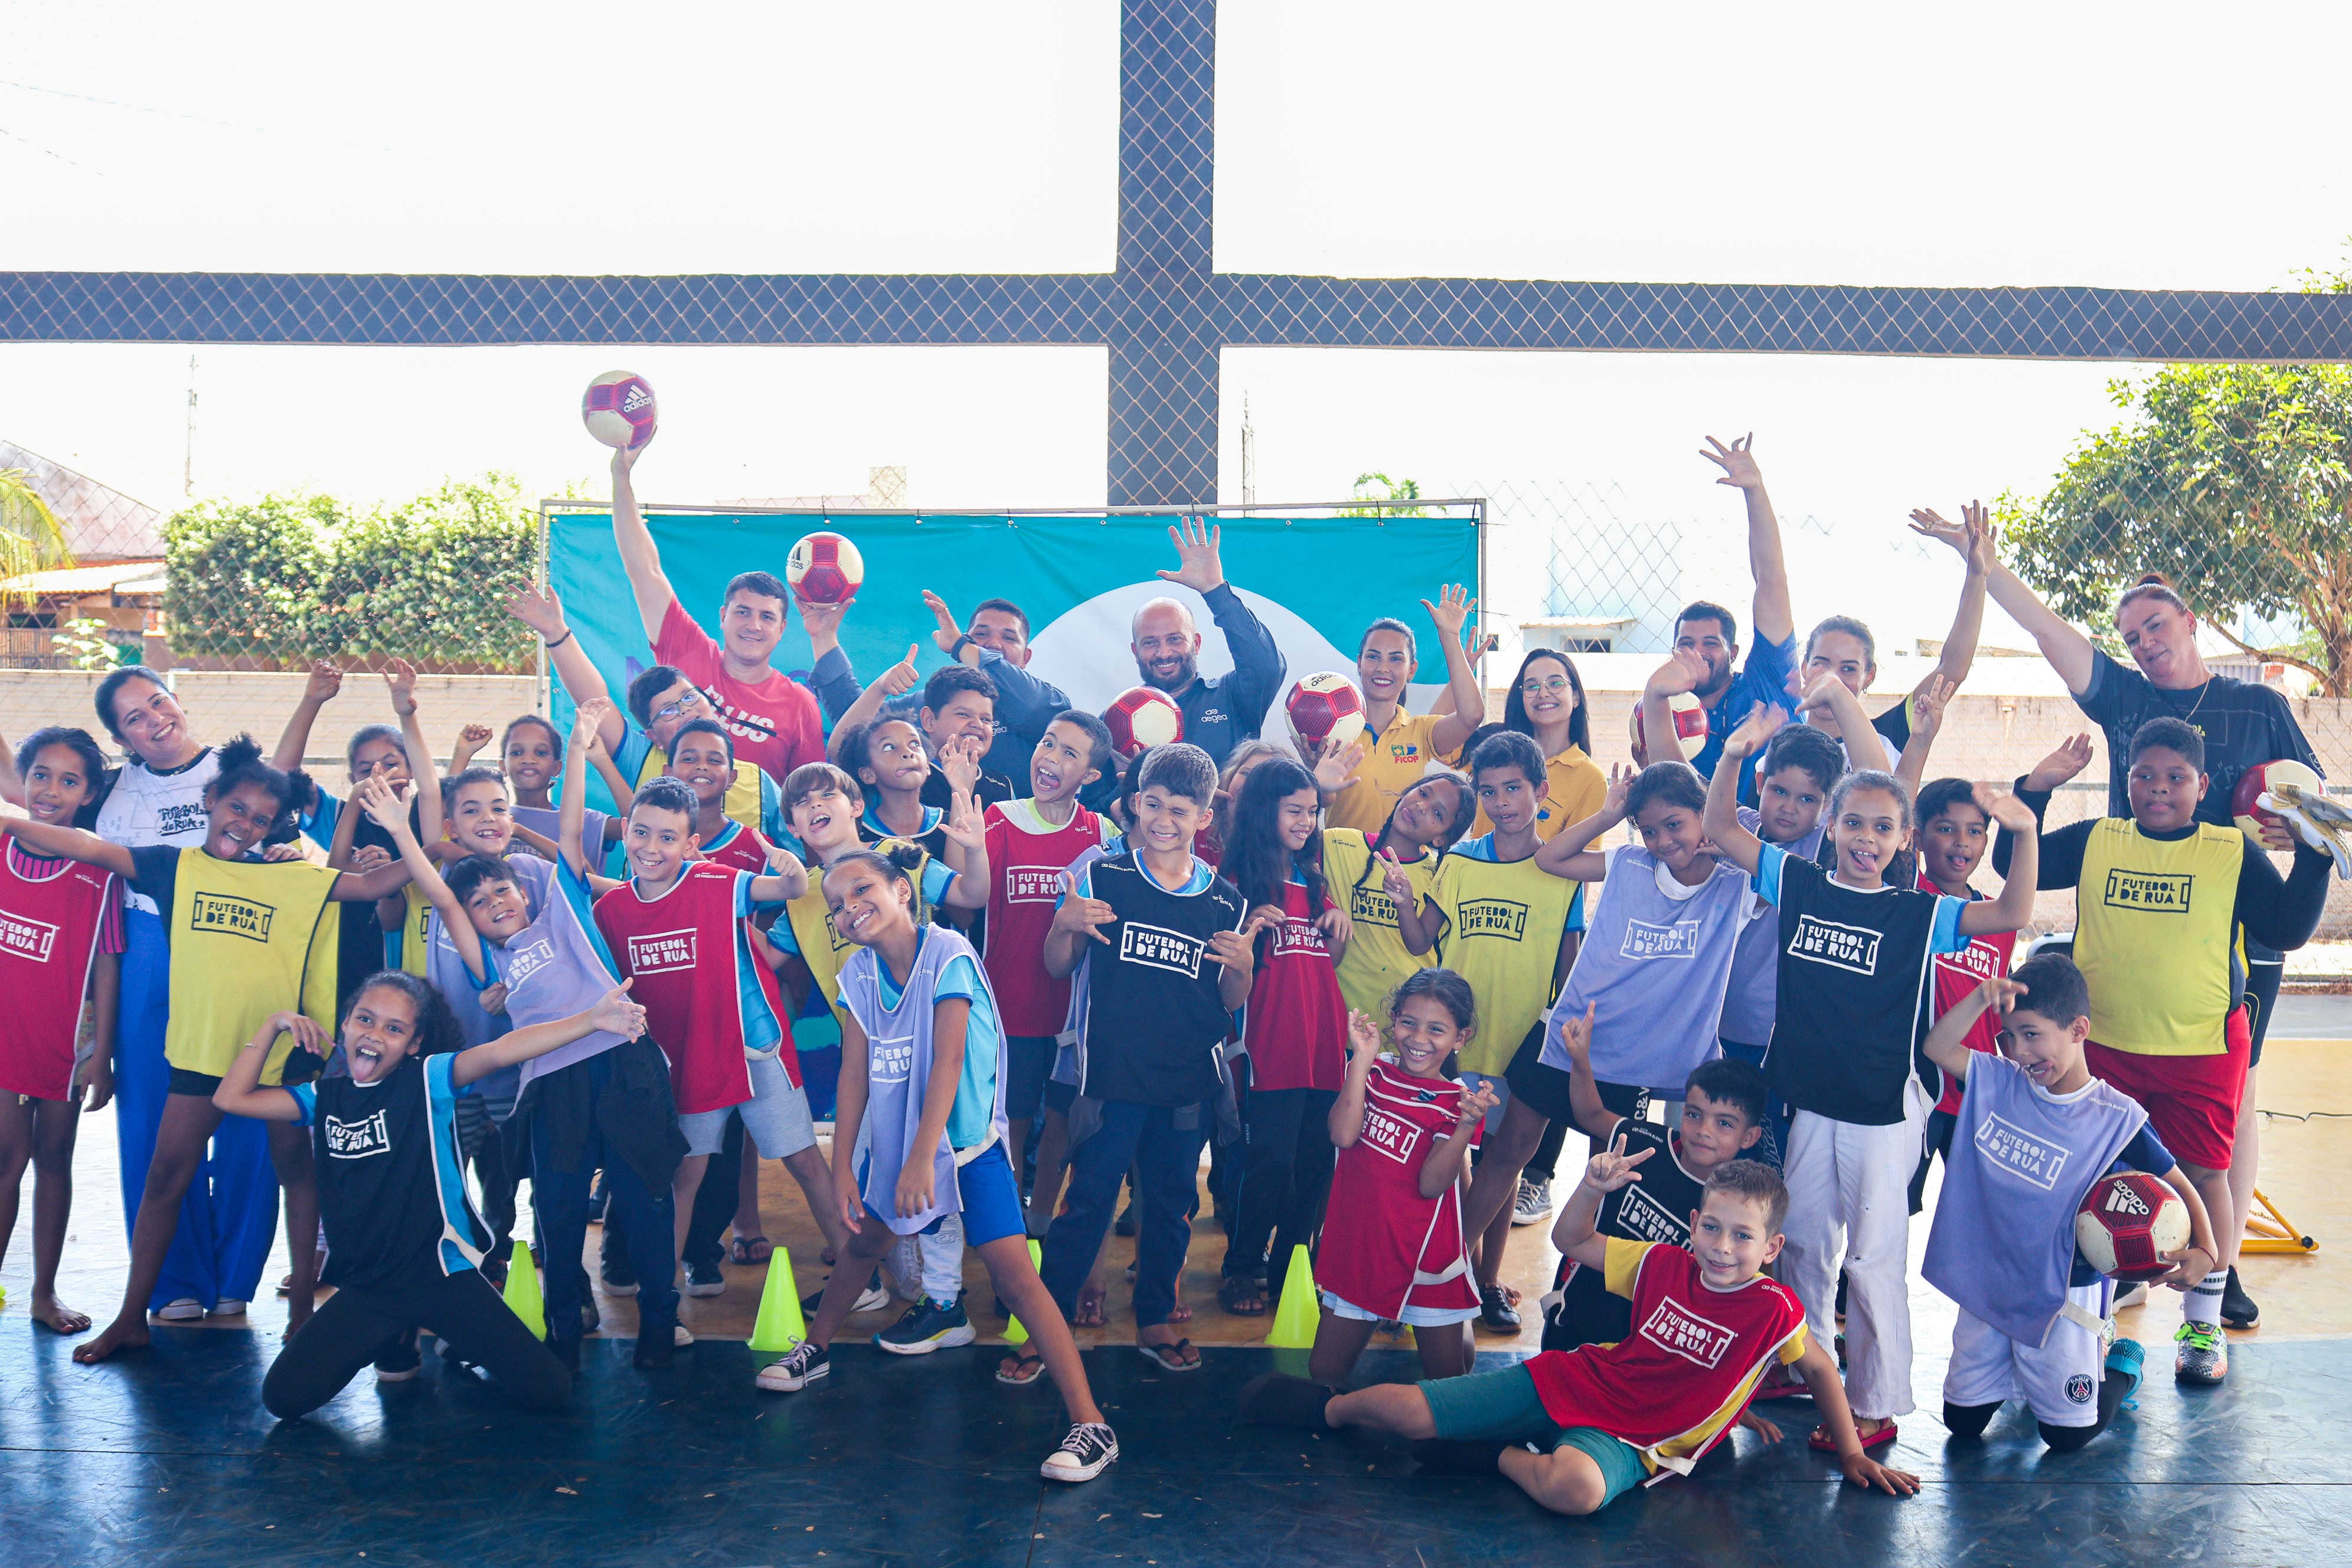  Águas de Pimenta Bueno lança a 2ª edição do projeto social 'Futebol de Rua'